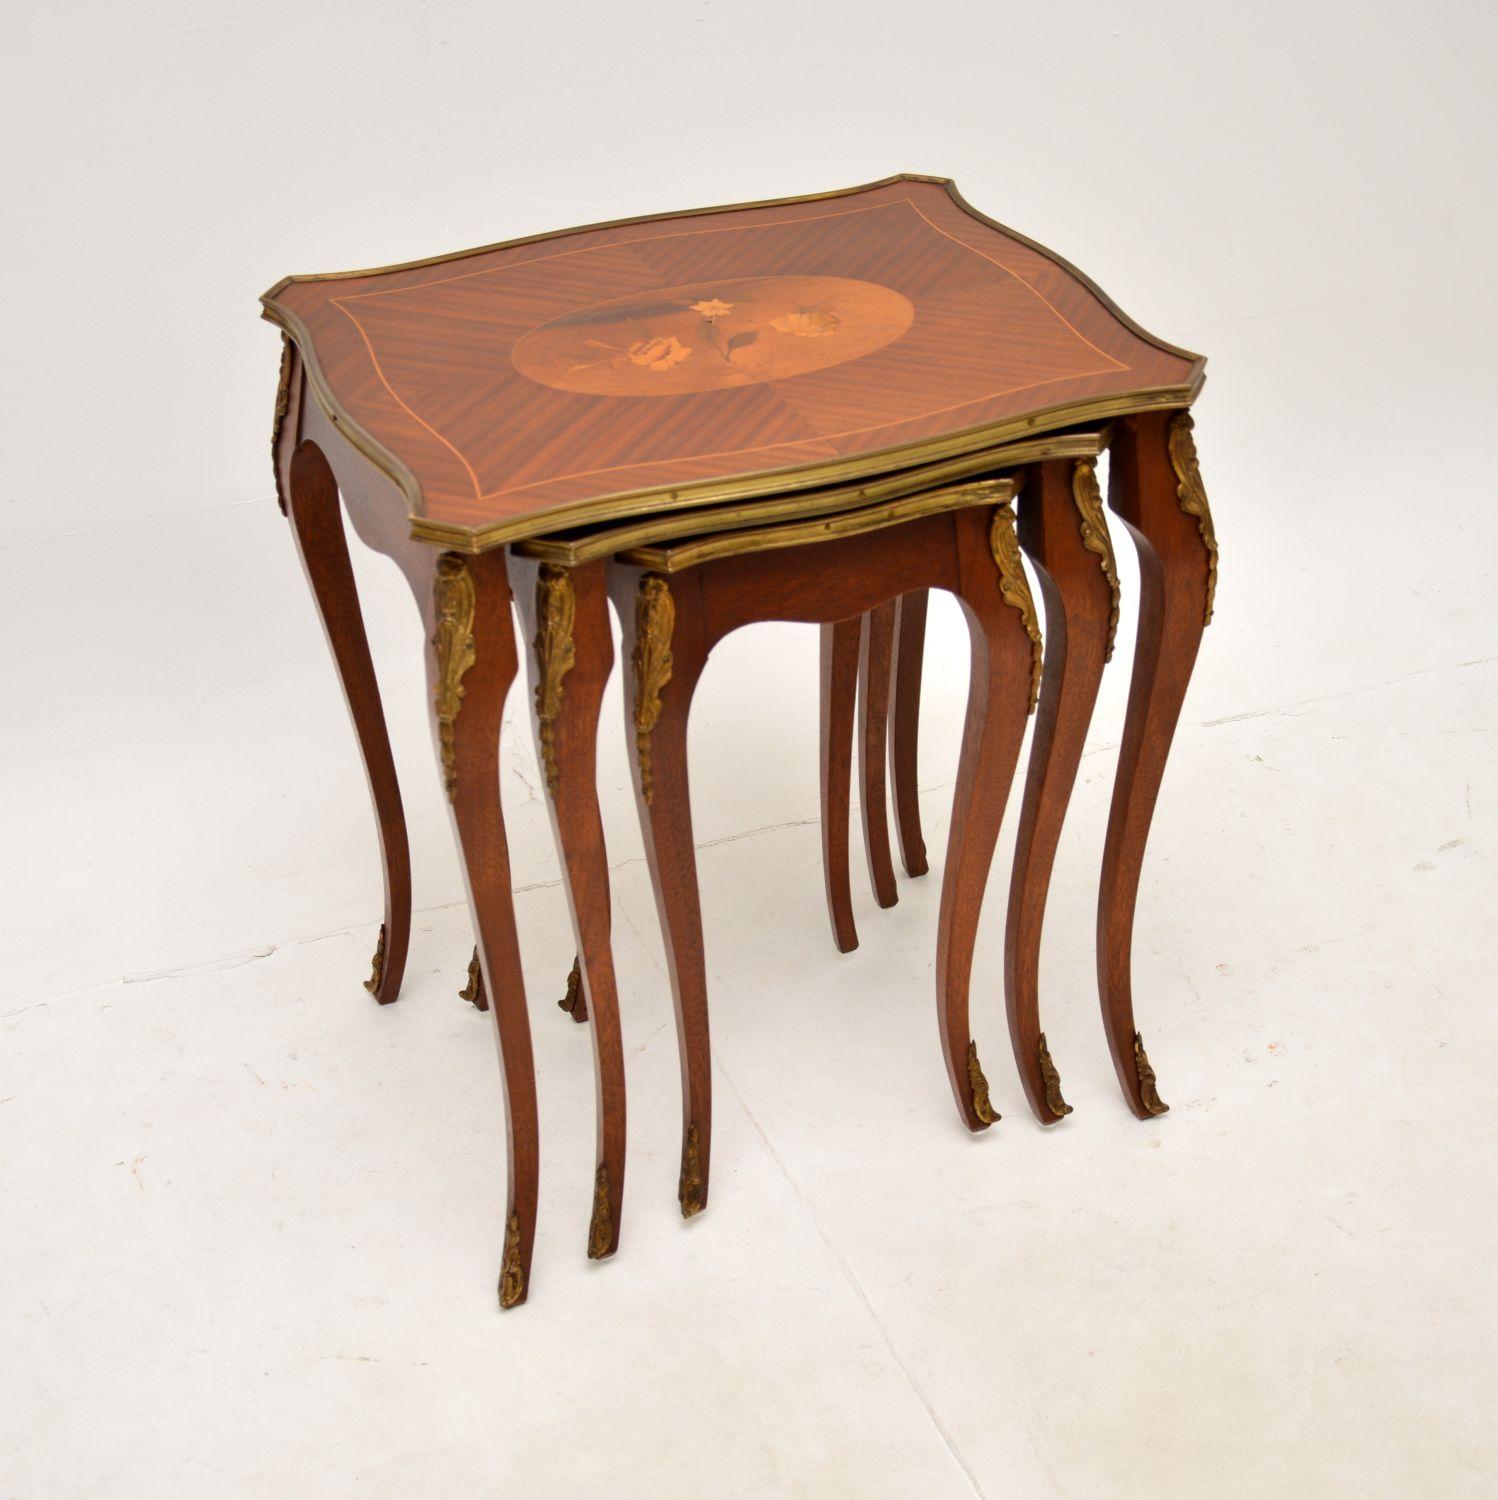 Ein wunderschönes antikes französisches Tischnest mit Intarsien. Sie wurde in Frankreich hergestellt und stammt etwa aus den 1930er Jahren.

Die Qualität ist fantastisch, es ist wunderschön gemacht, mit wunderschönen Intarsien auf den Oberseiten,